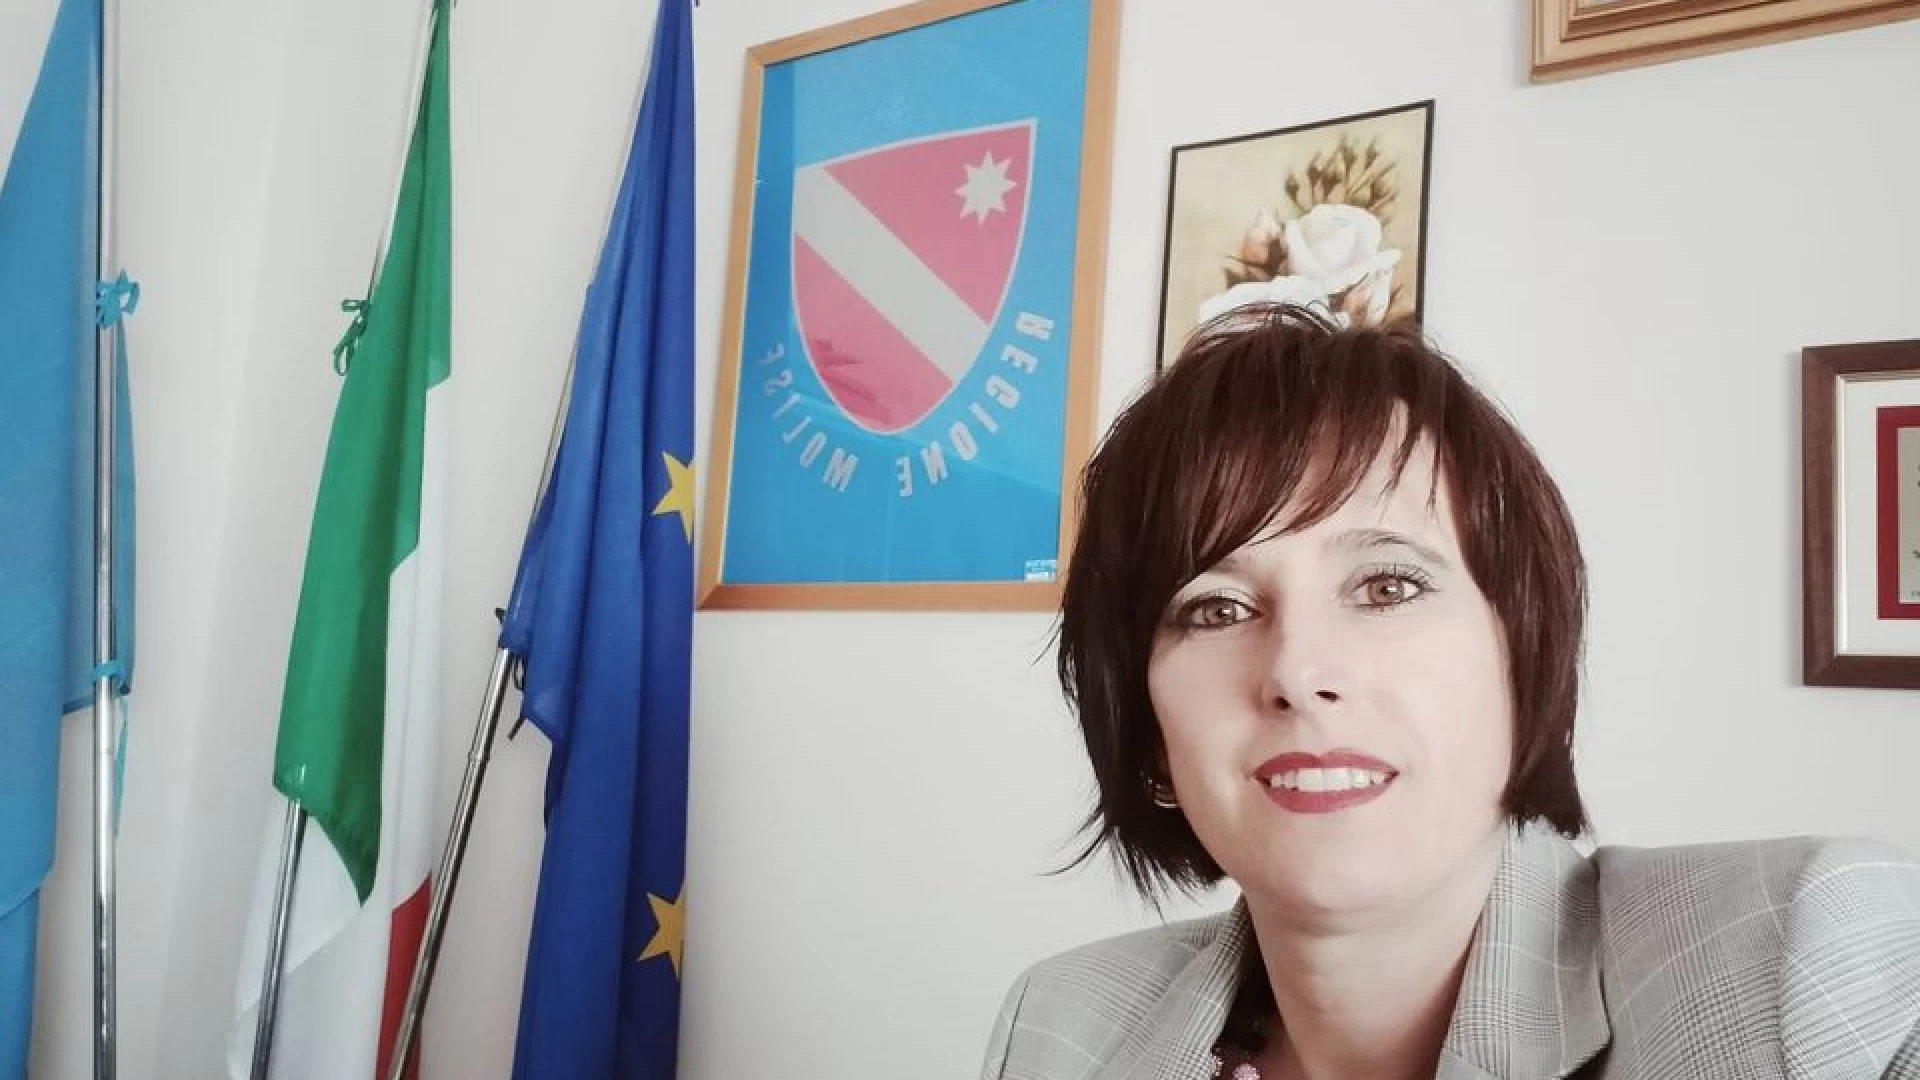 Licenziamenti nella vigilanza privata, Aida Romagnuolo: “una condizione drammatica a cui porre rimedio”